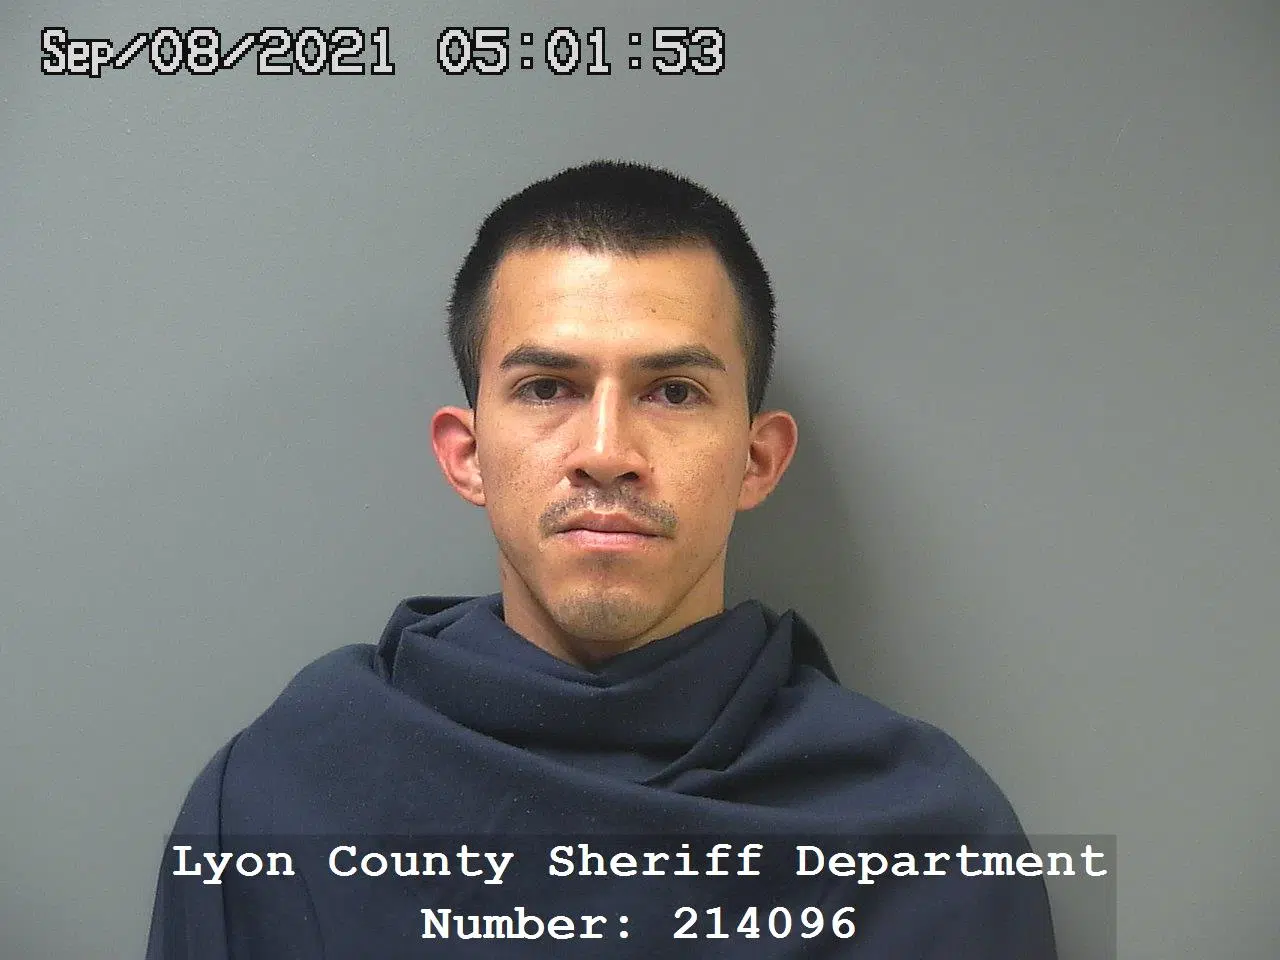 Cardona-Rivera appealing lengthy sentence in Lyon County rape case